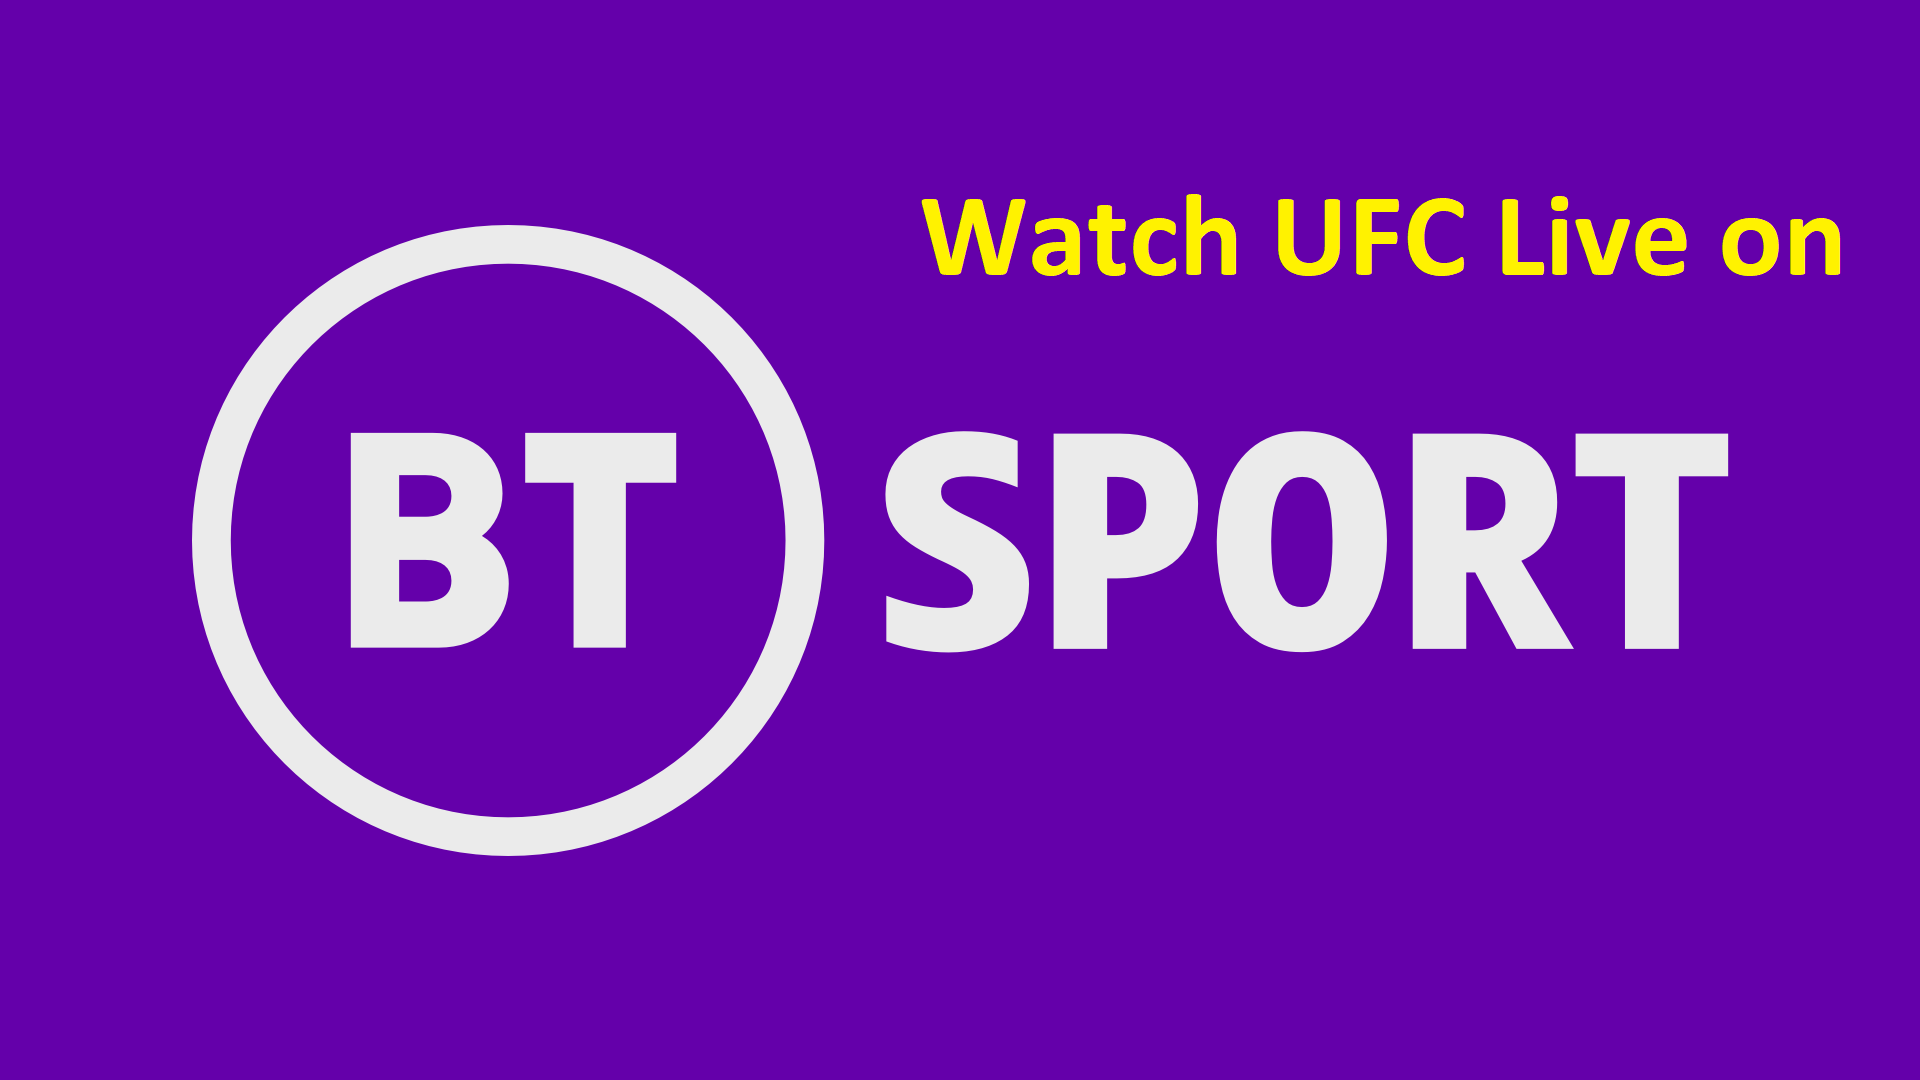 Watch UFC on BT sport